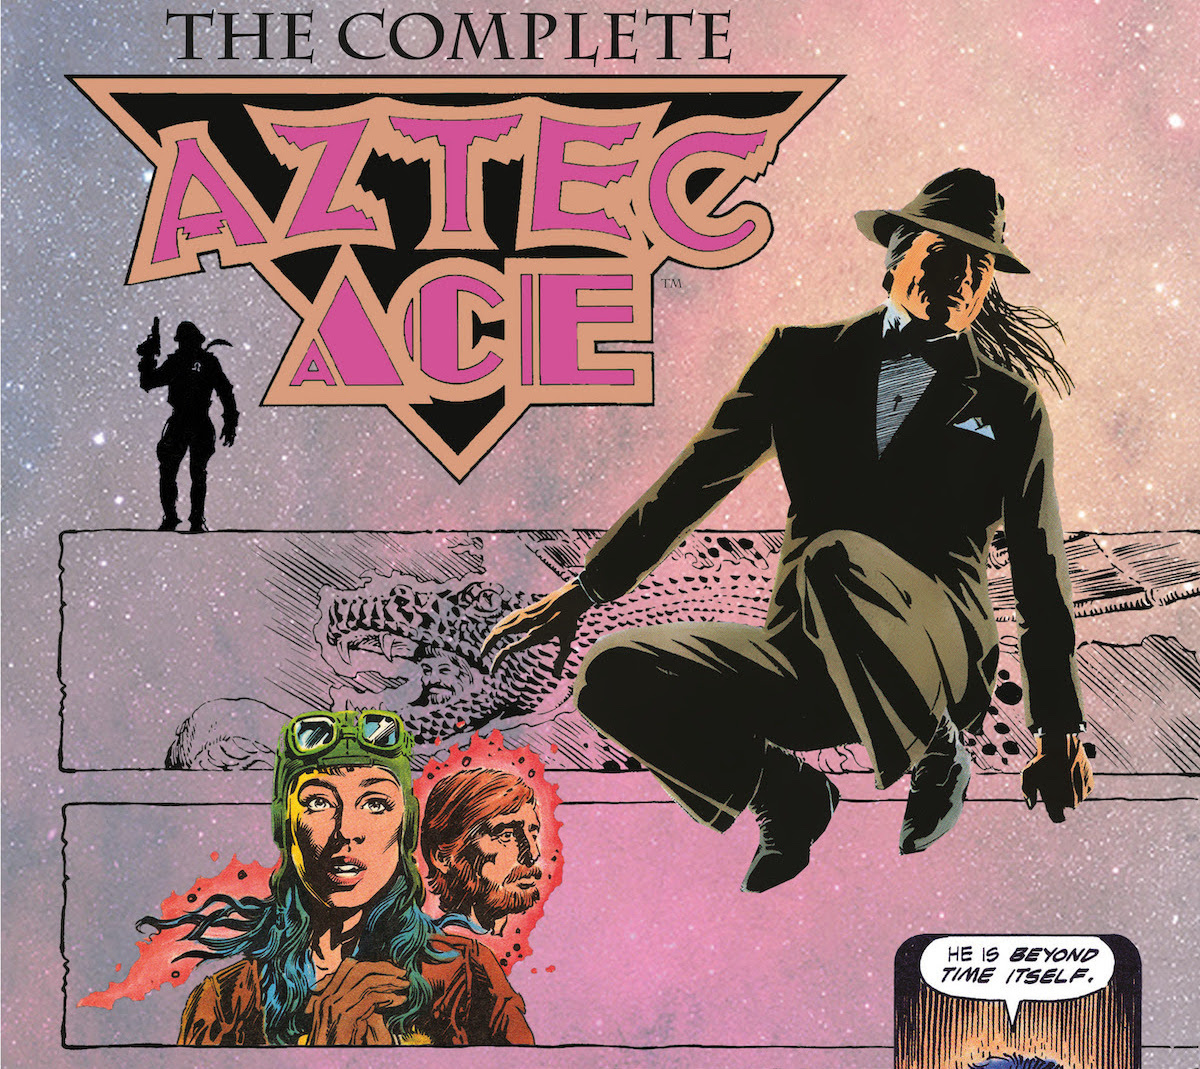 Cult classic 'Aztec Ace' gets Dark Horse reprint July 20th